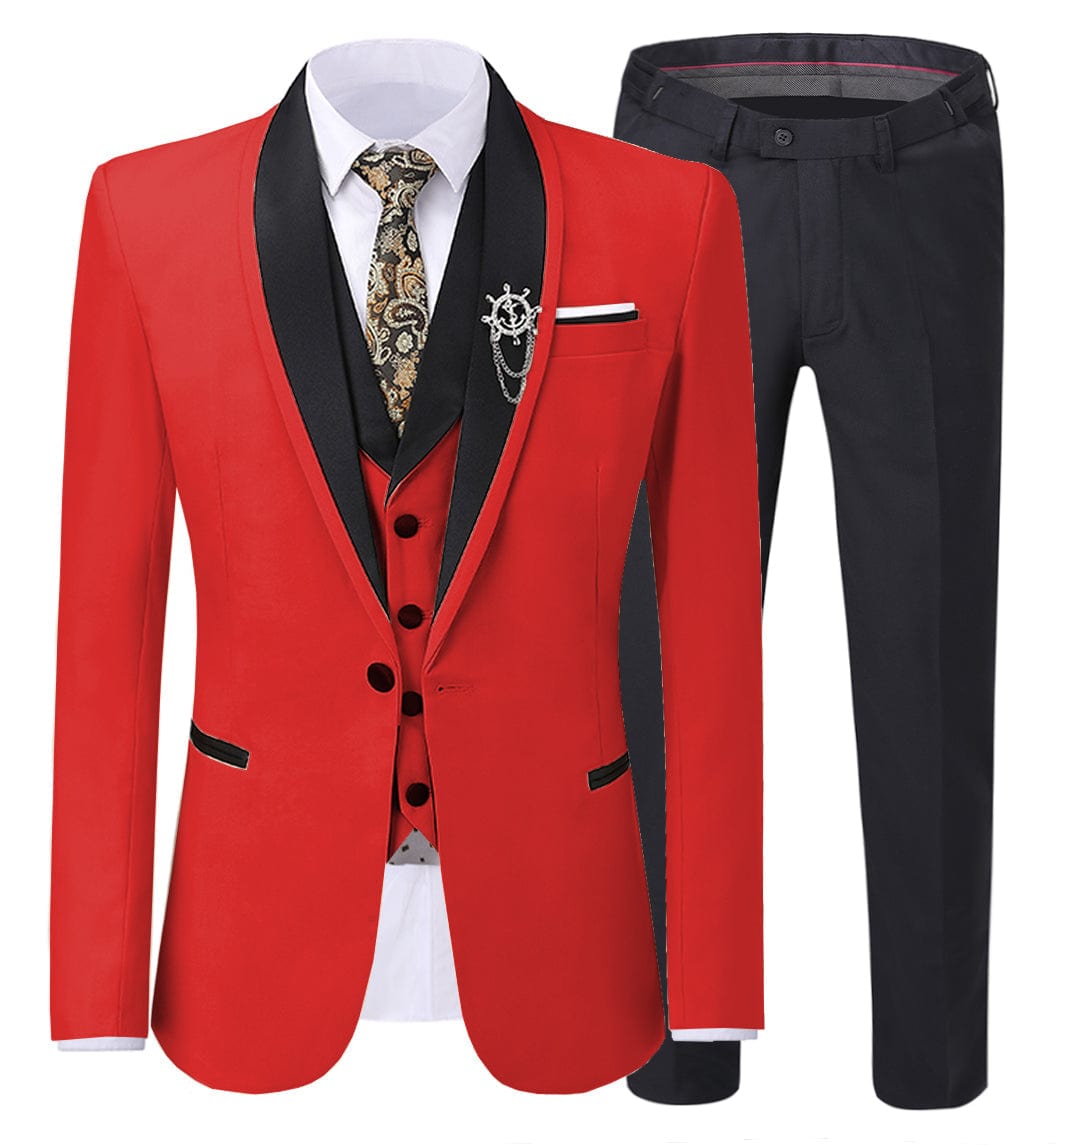 ceehuteey Men's 3 Pieces Formal Suit Flat Notch Lapel Tuxedos (Blazer+vest+Pants)